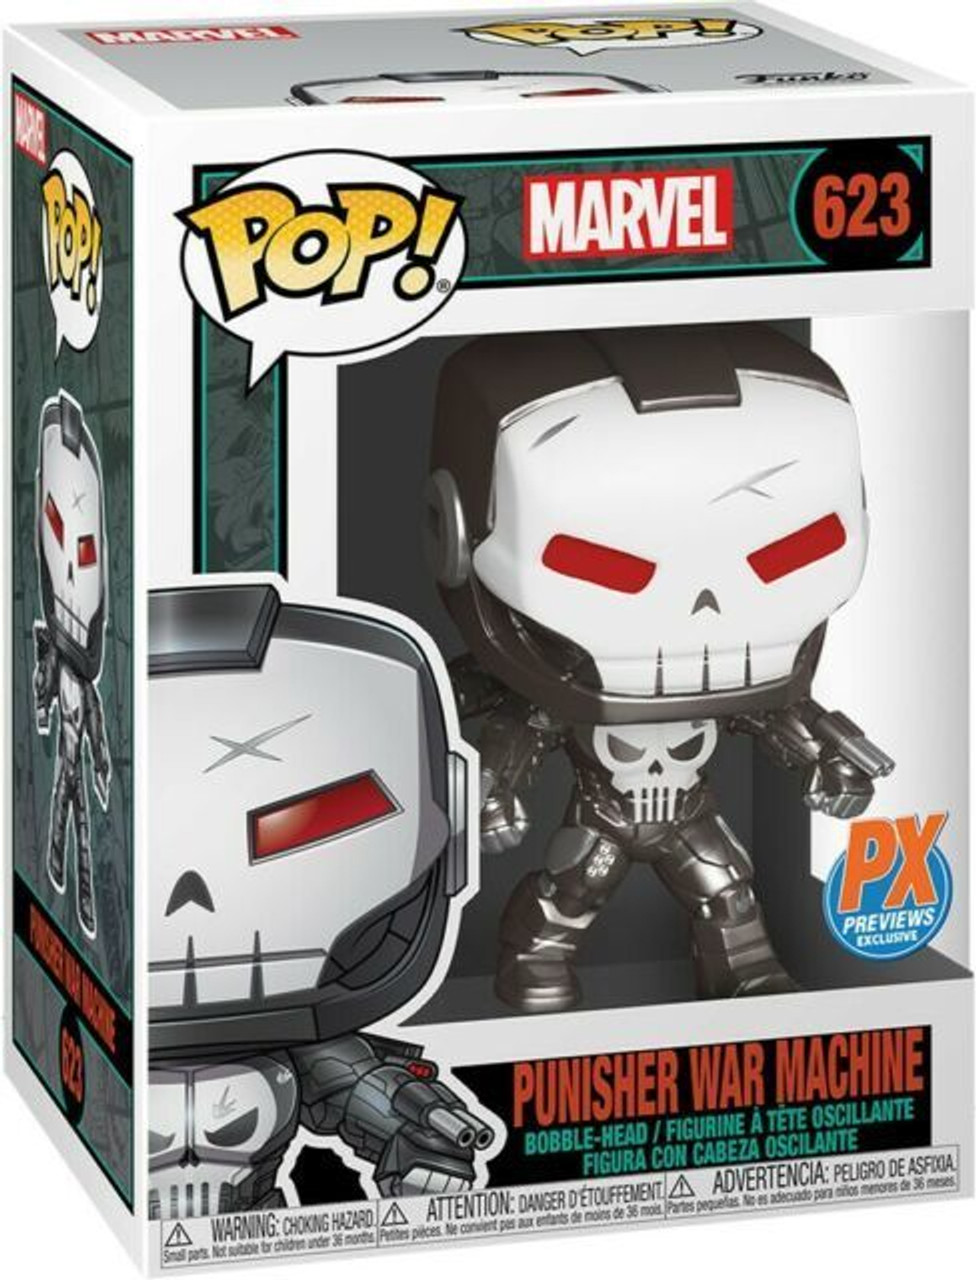 198704 Marvel Punisher War Machine Pop! Vinyl Figure - PX